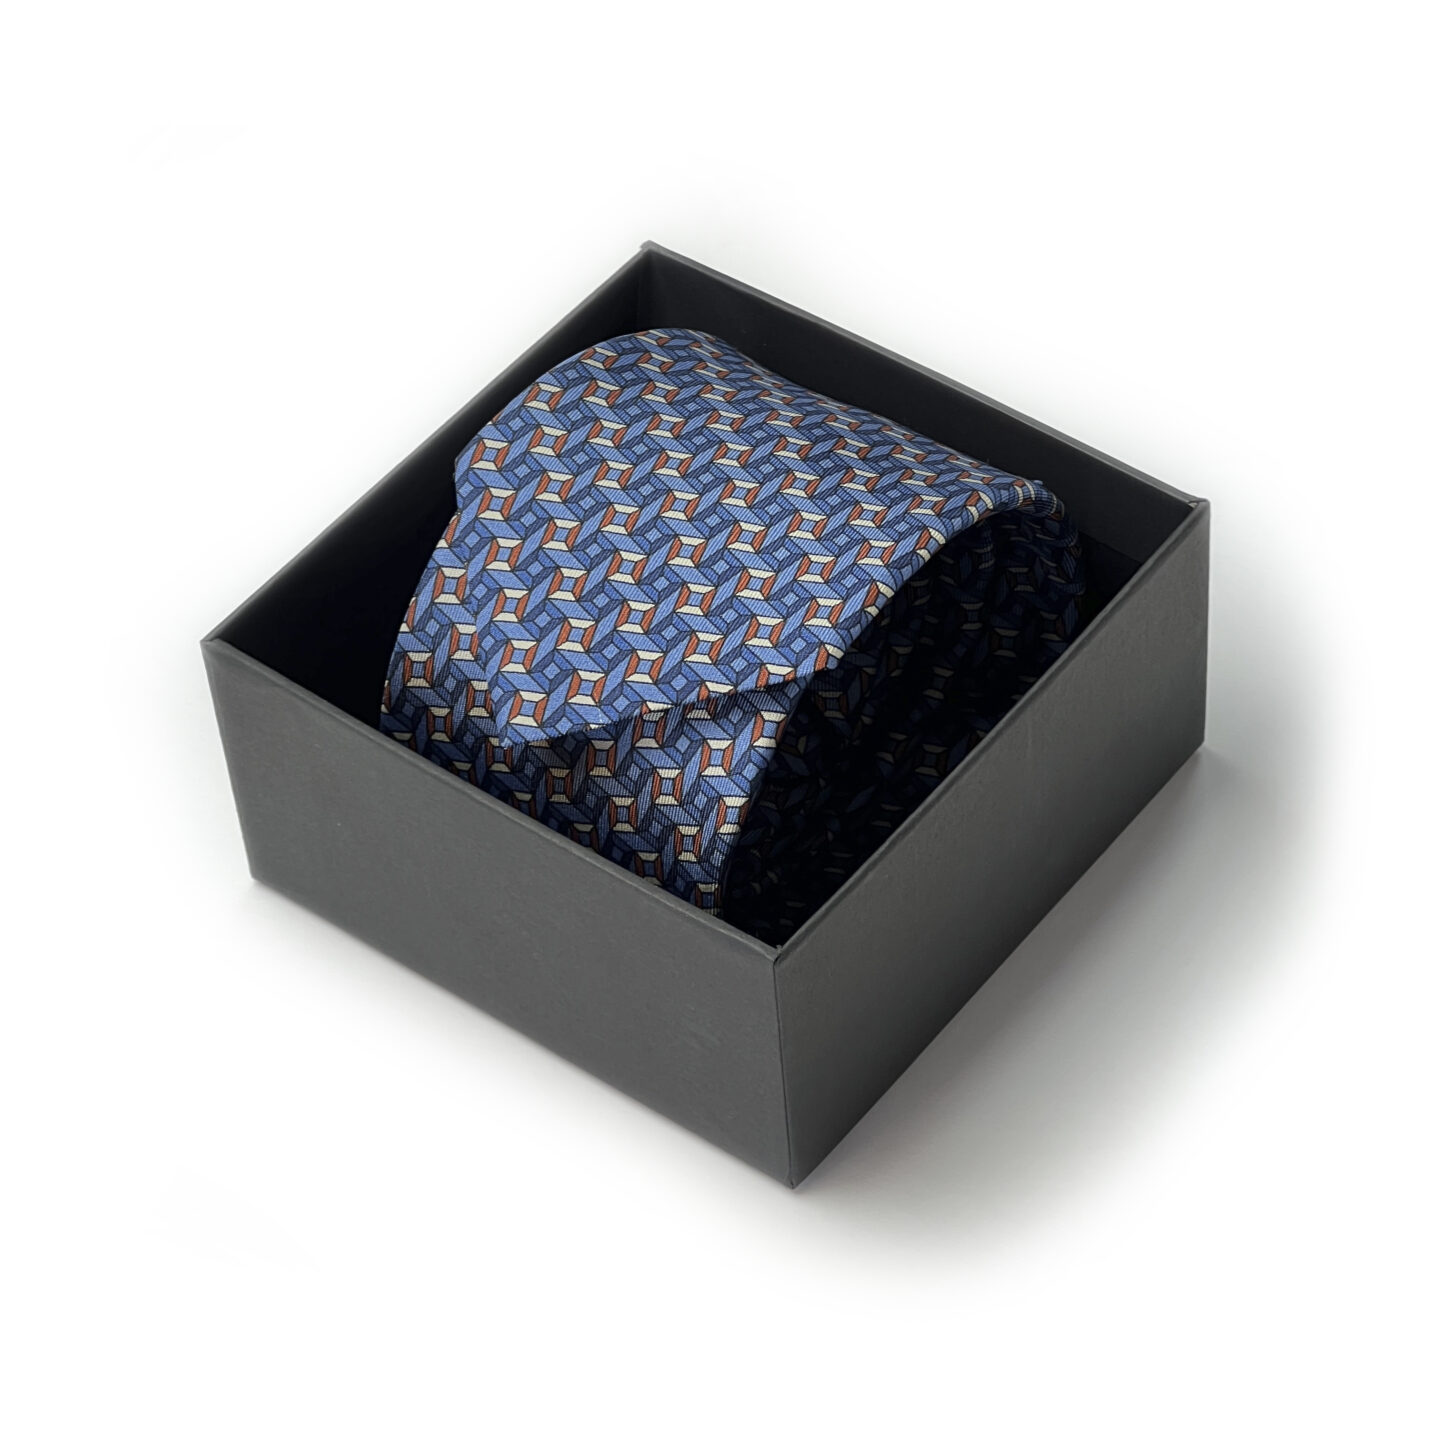 tamsiai mėlynas margas kaklaraištis